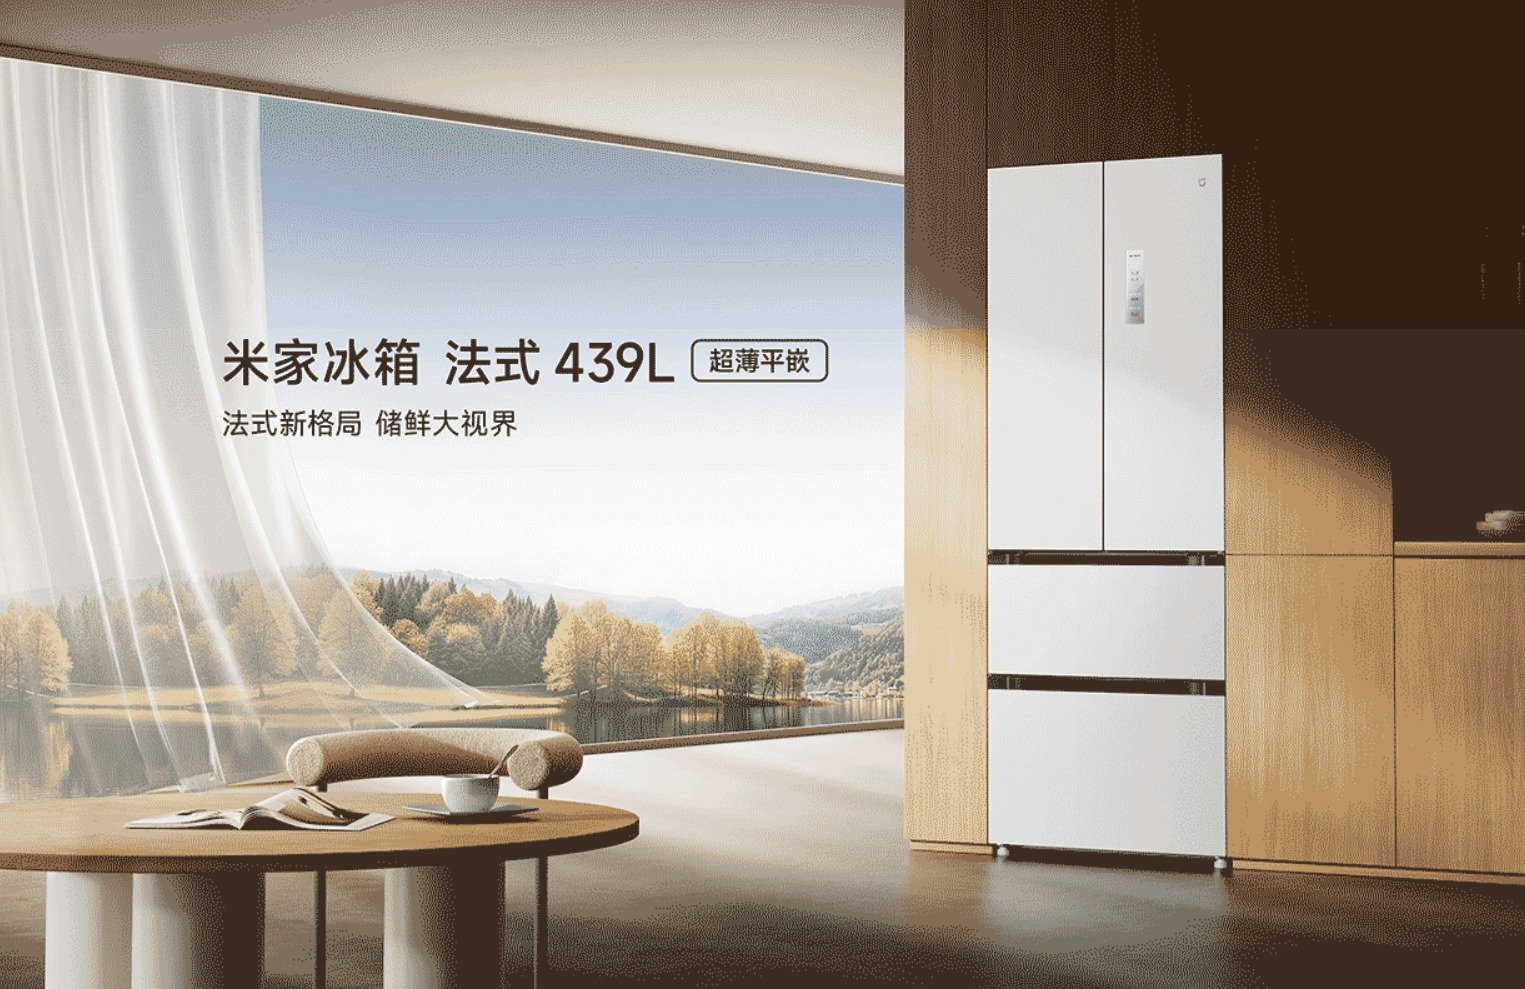 Холодильник Xiaomi Mijia во французском стиле 439L выпущен в Китае